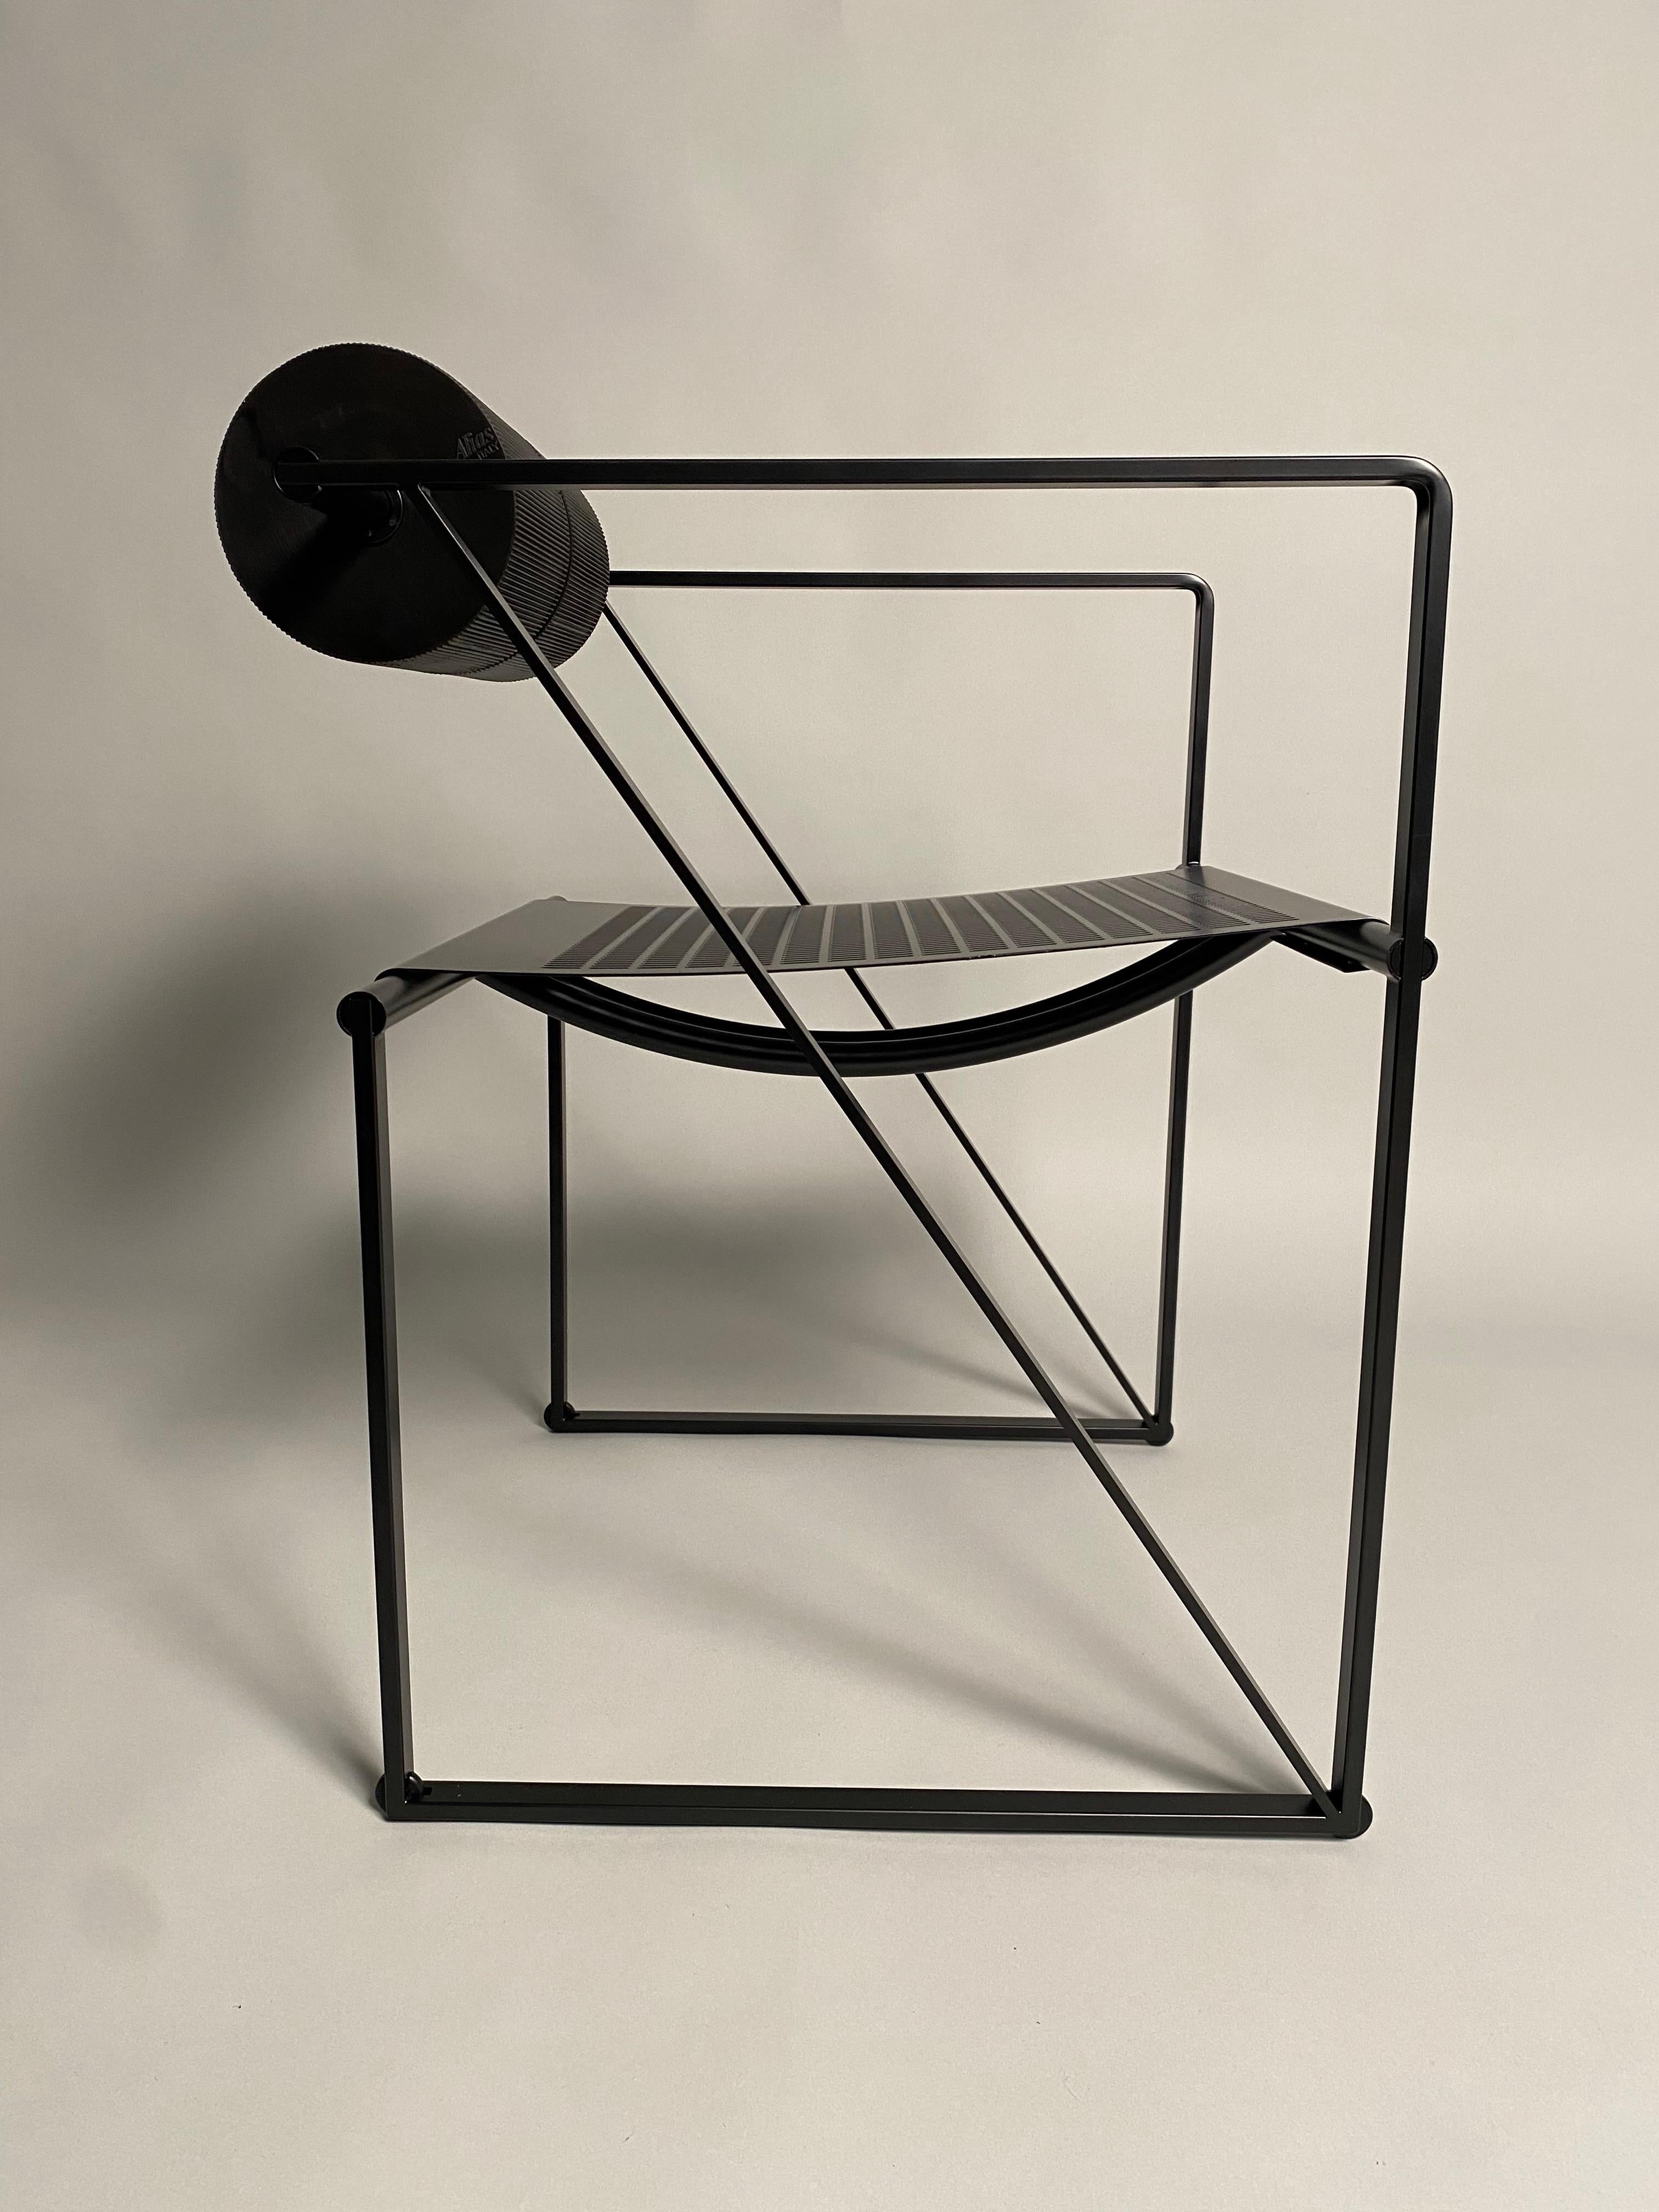 Trois chaises 'Seconda' conçues par le célèbre architecte Mario Botta pour la firme italienne Alias, modèle 602. Tous les trois sont peints en noir tant au niveau de la structure que de l'assise, ils portent le logo Alias dans le dossier